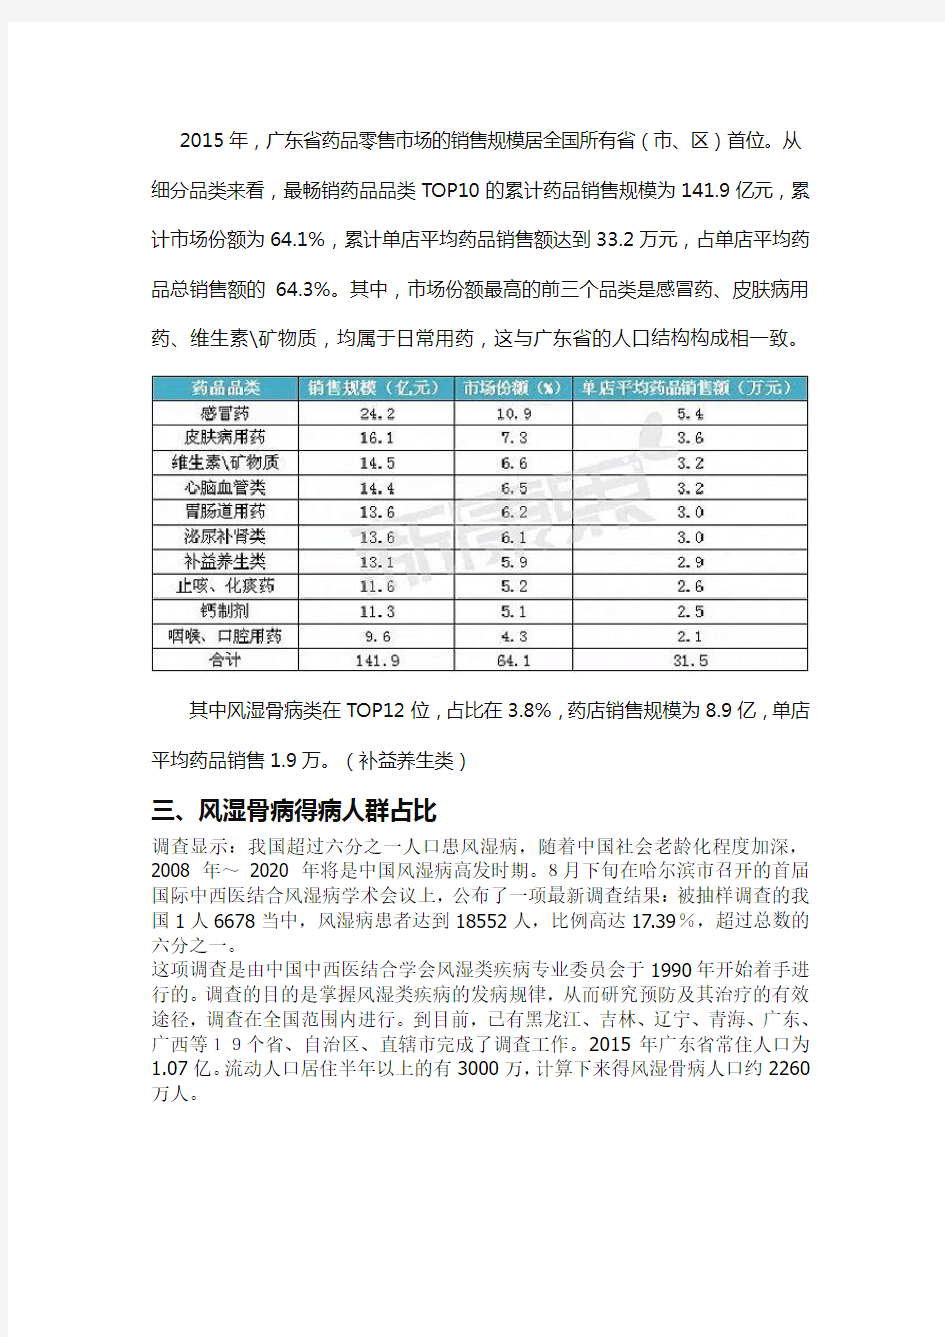 广东省药品数据分析